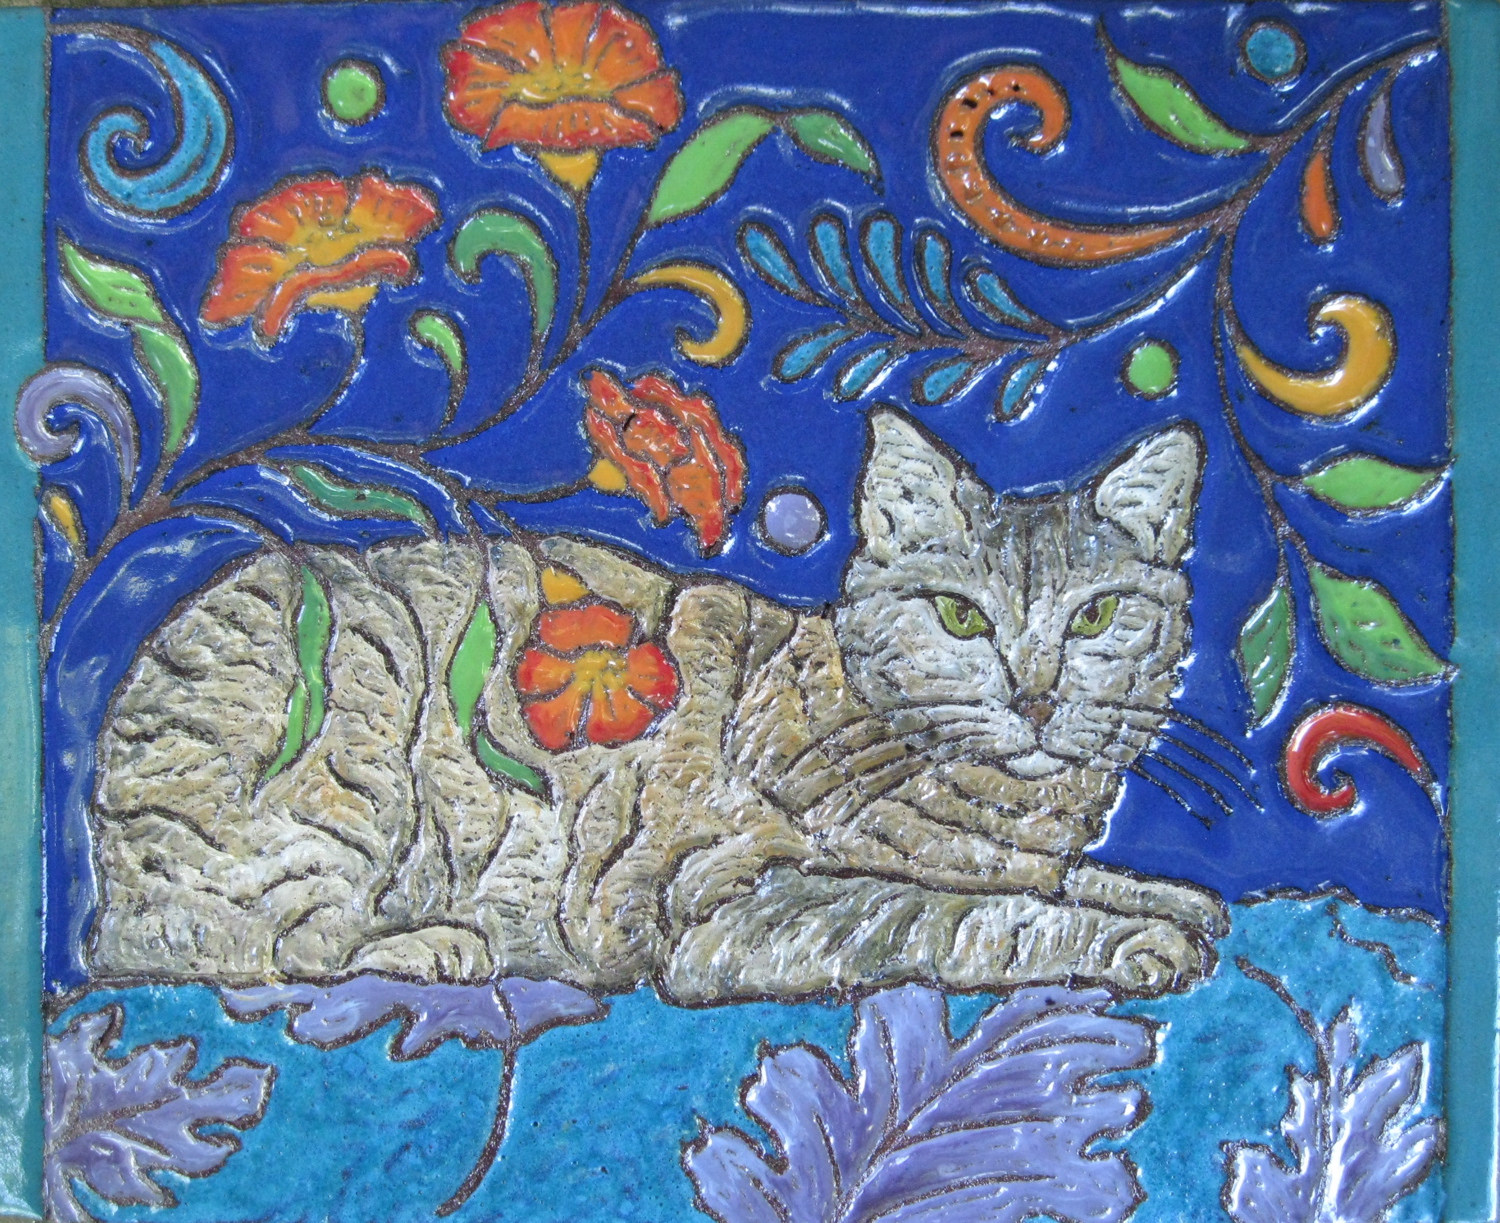 Colorful Ceramic Memorial Tile for Beloved Cat